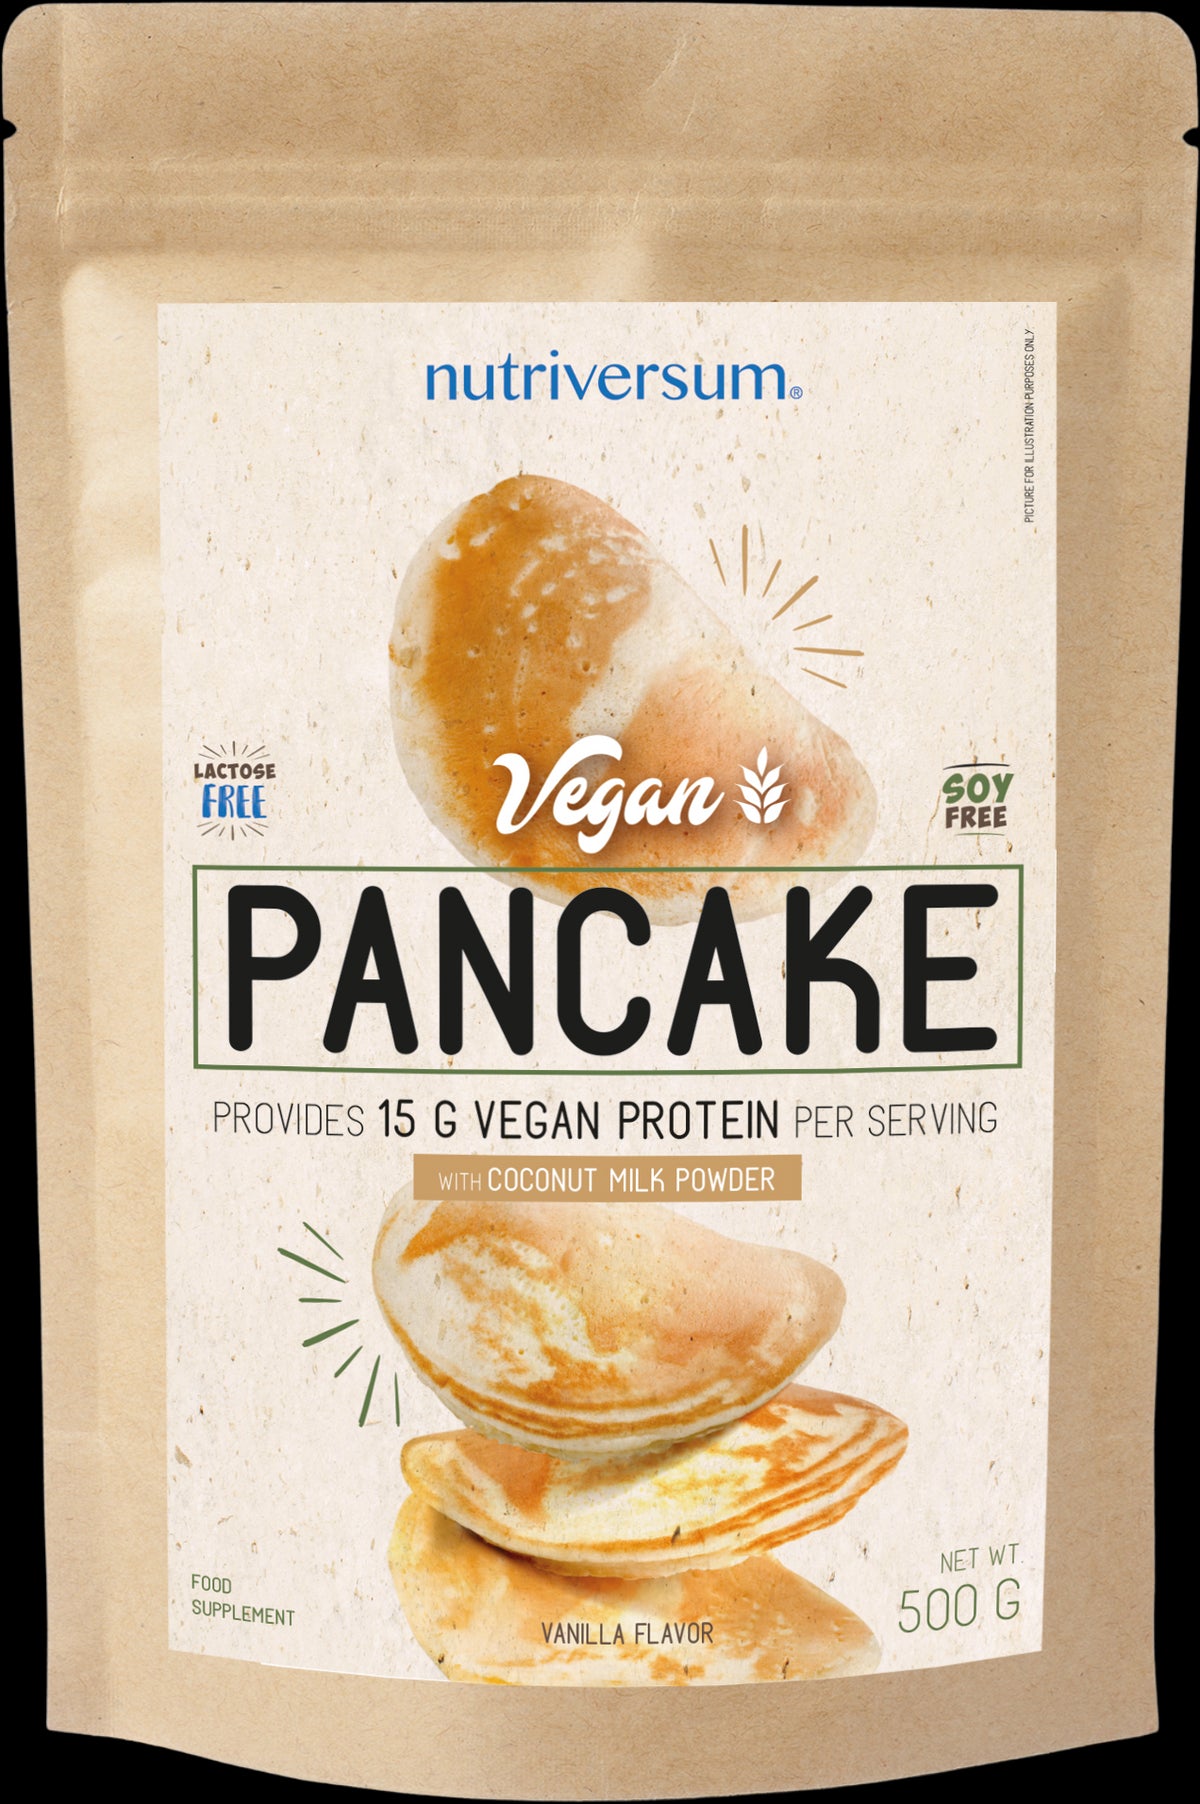 Pancake | Vegan Protein Pancake Mixture - BadiZdrav.BG